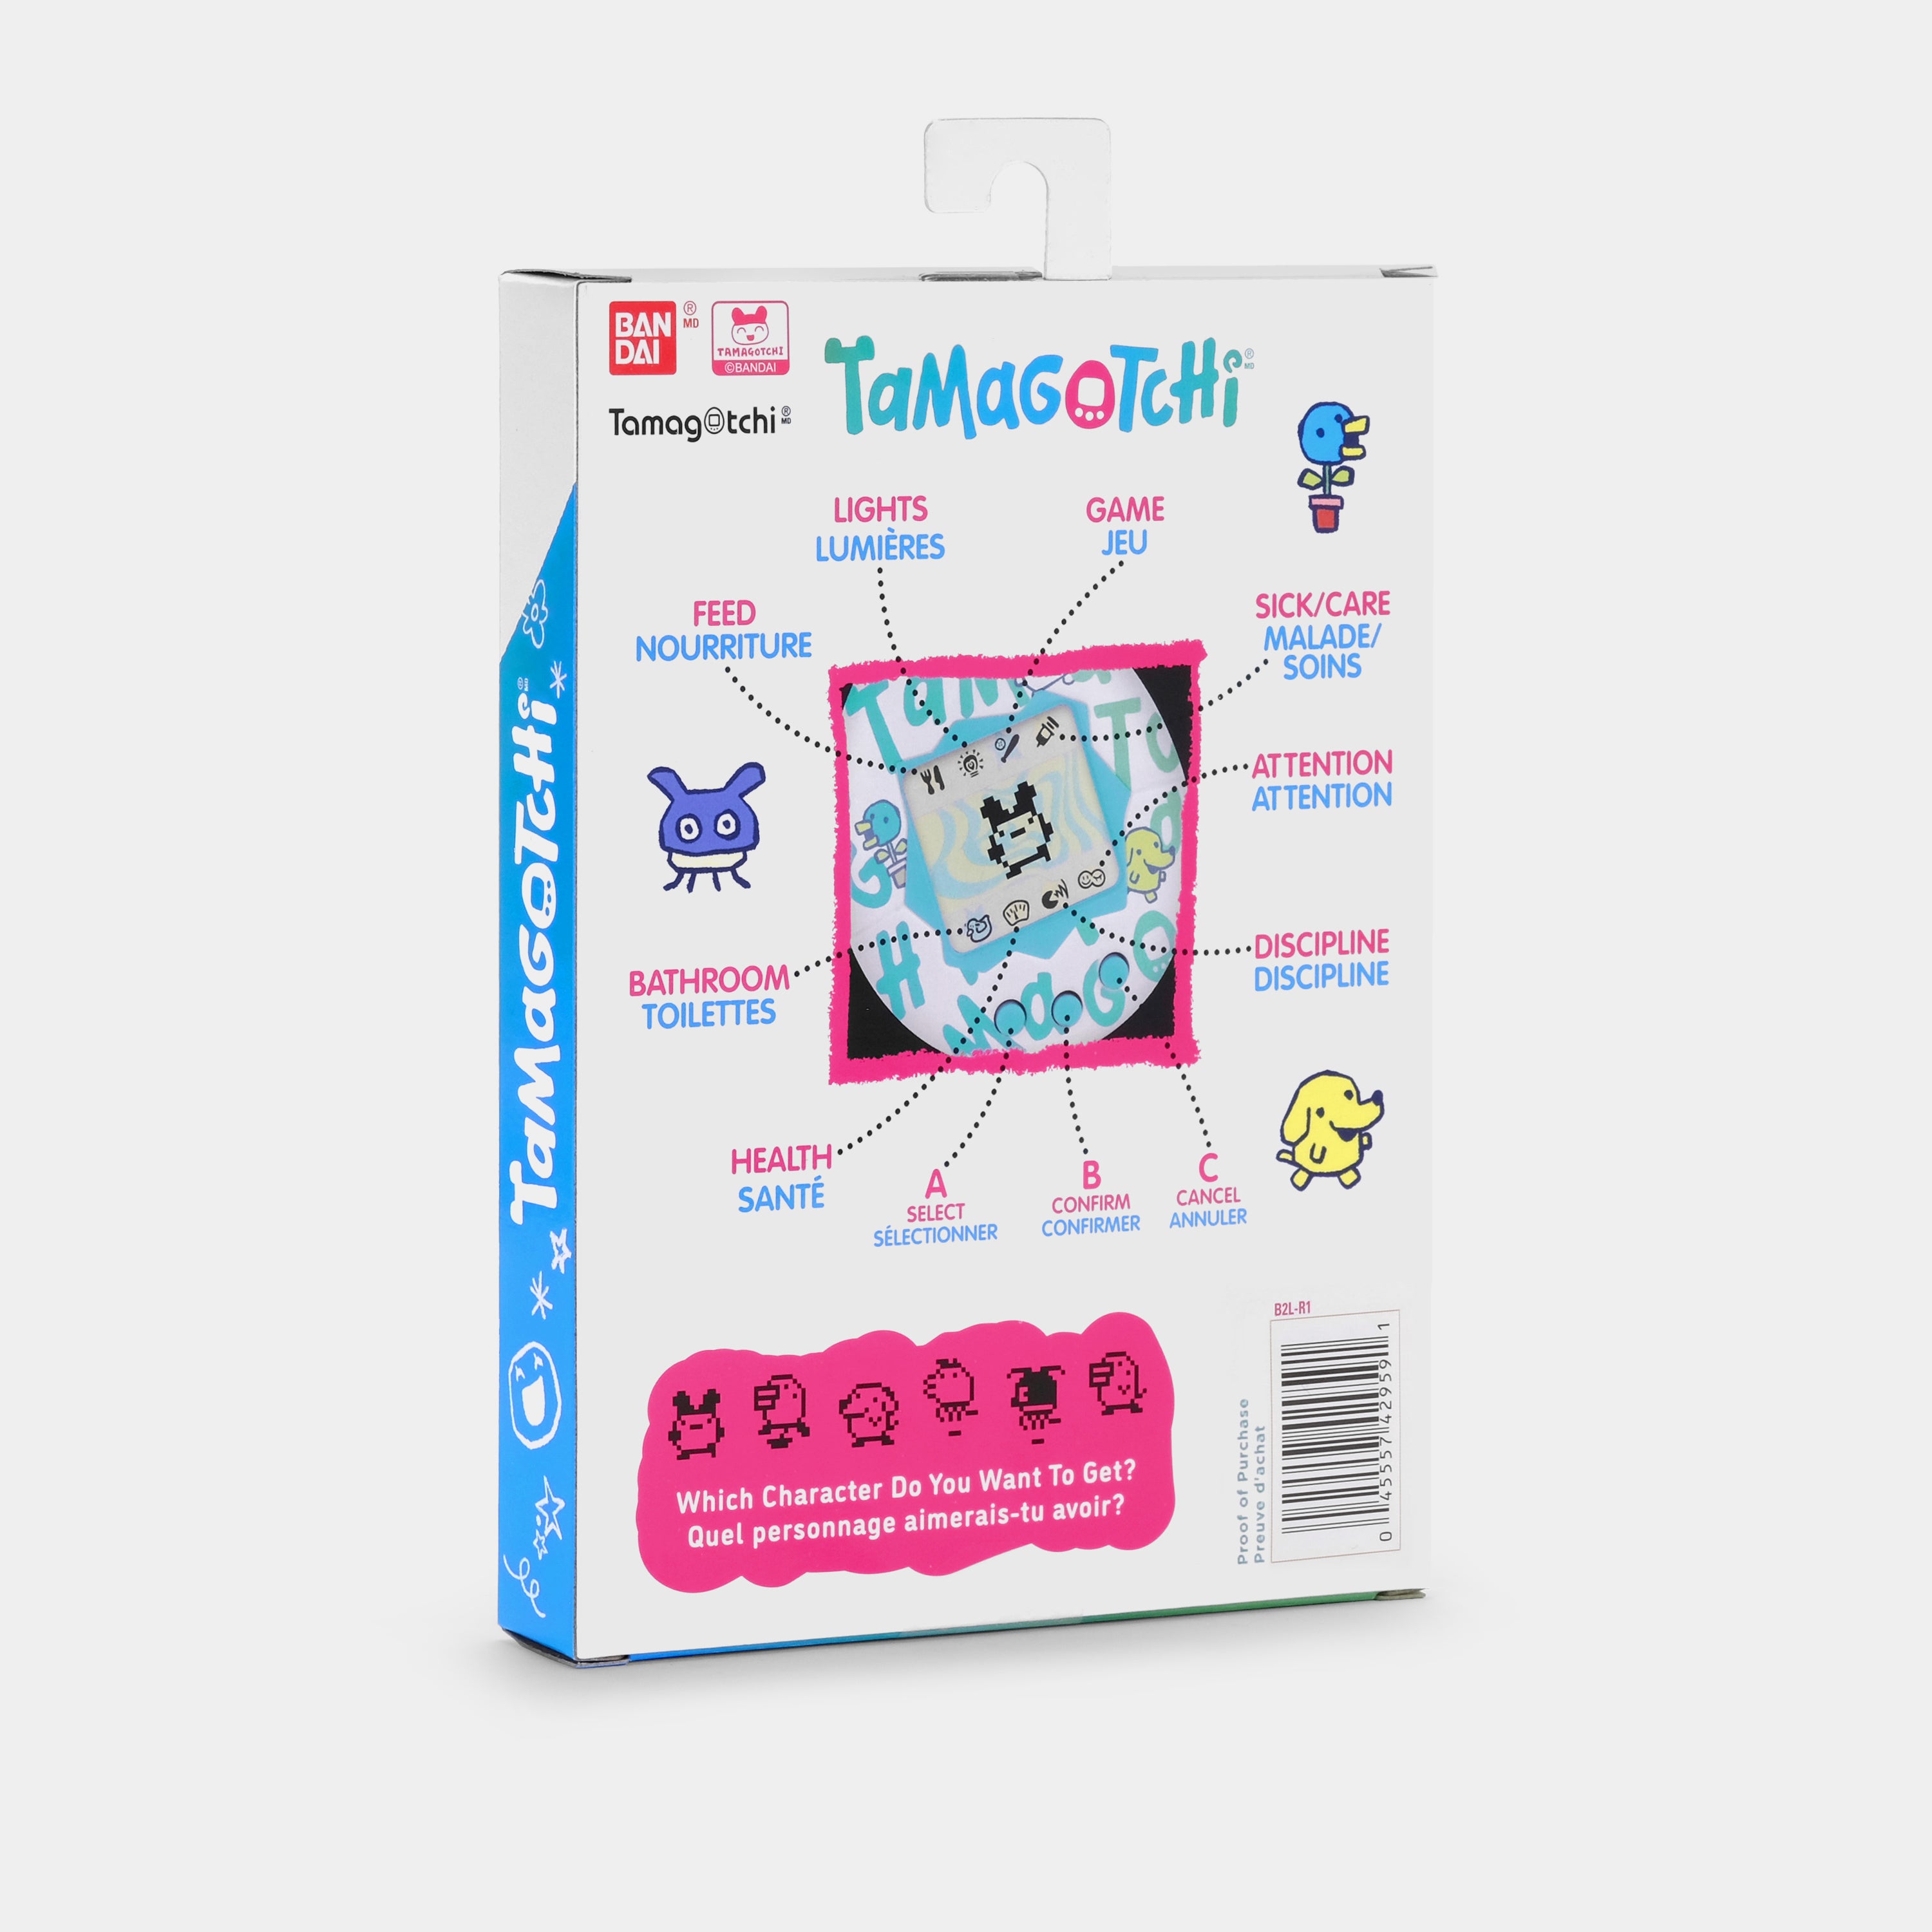 Original Tamagotchi (Gen. 2) Mimitchi Comic Book Virtual Pet